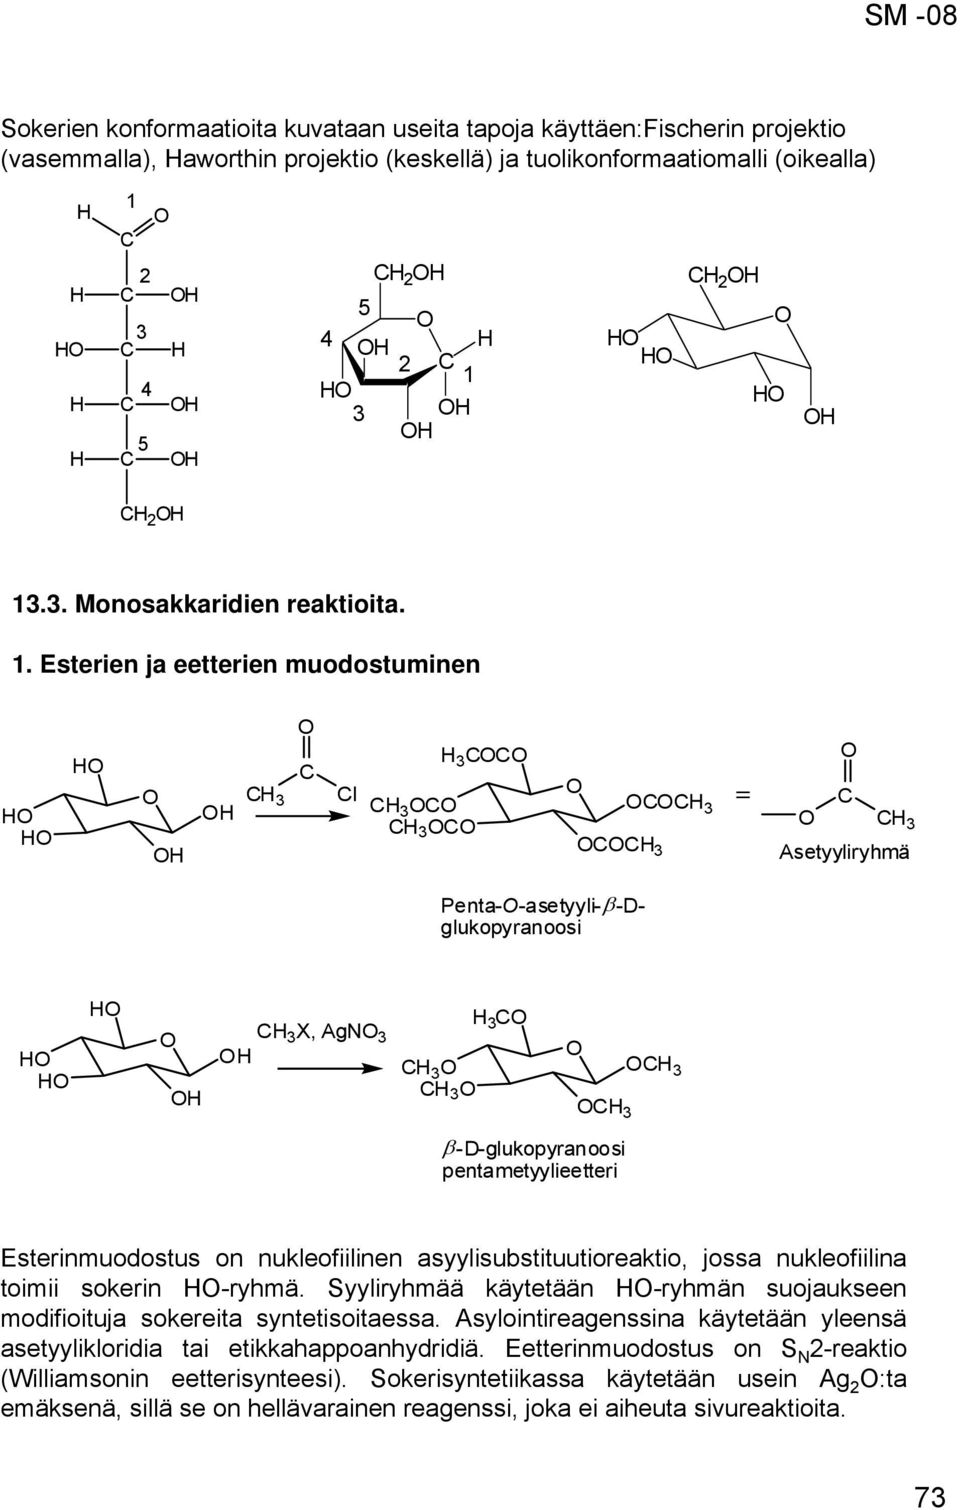 asyylisubstituutioreaktio, jossa nukleofiilina toimii sokerin -ryhmä. Syyliryhmää käytetään -ryhmän suojaukseen modifioituja sokereita syntetisoitaessa.